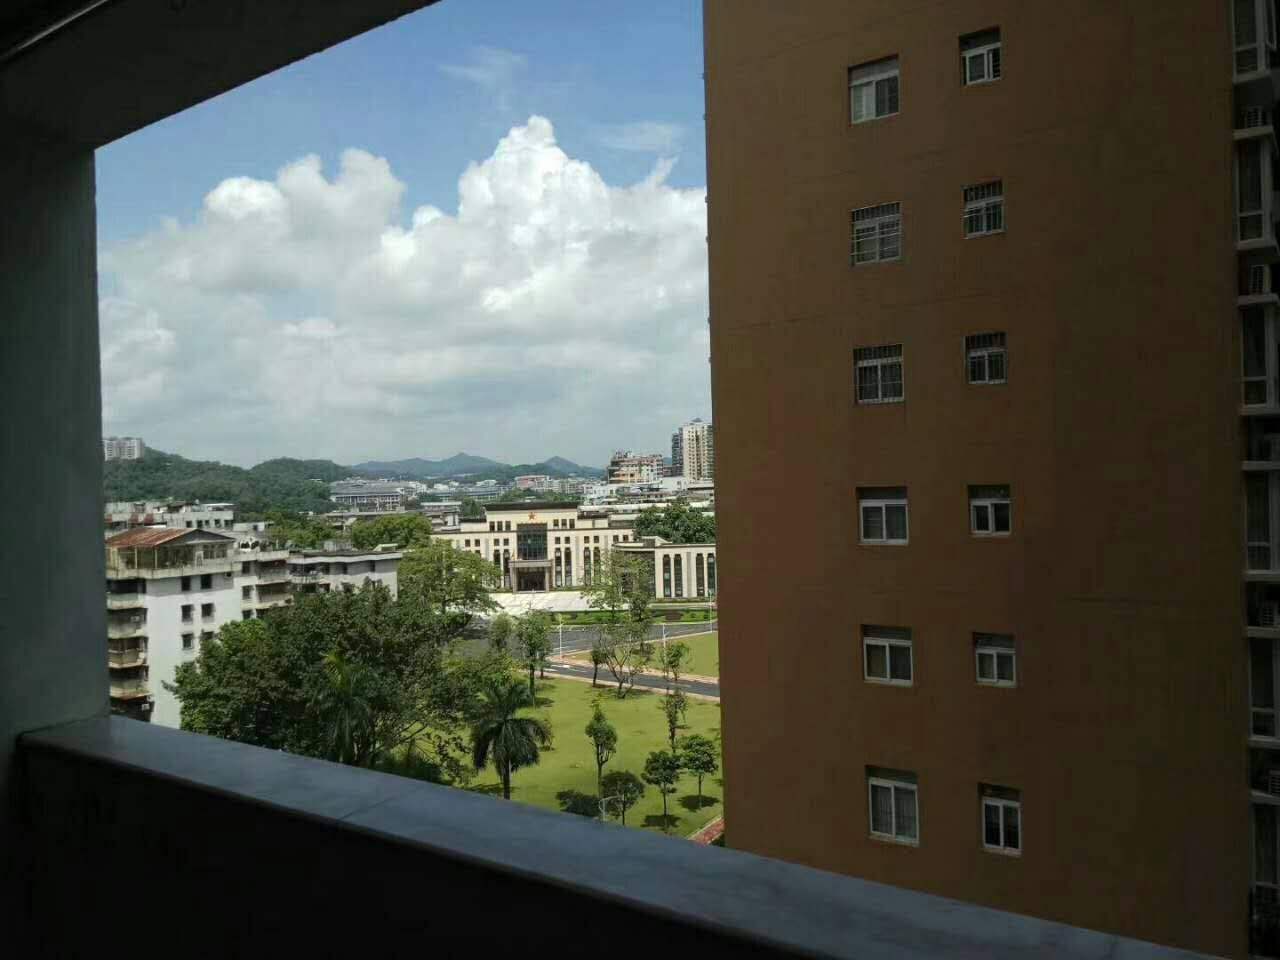 惠州市商业学校图片